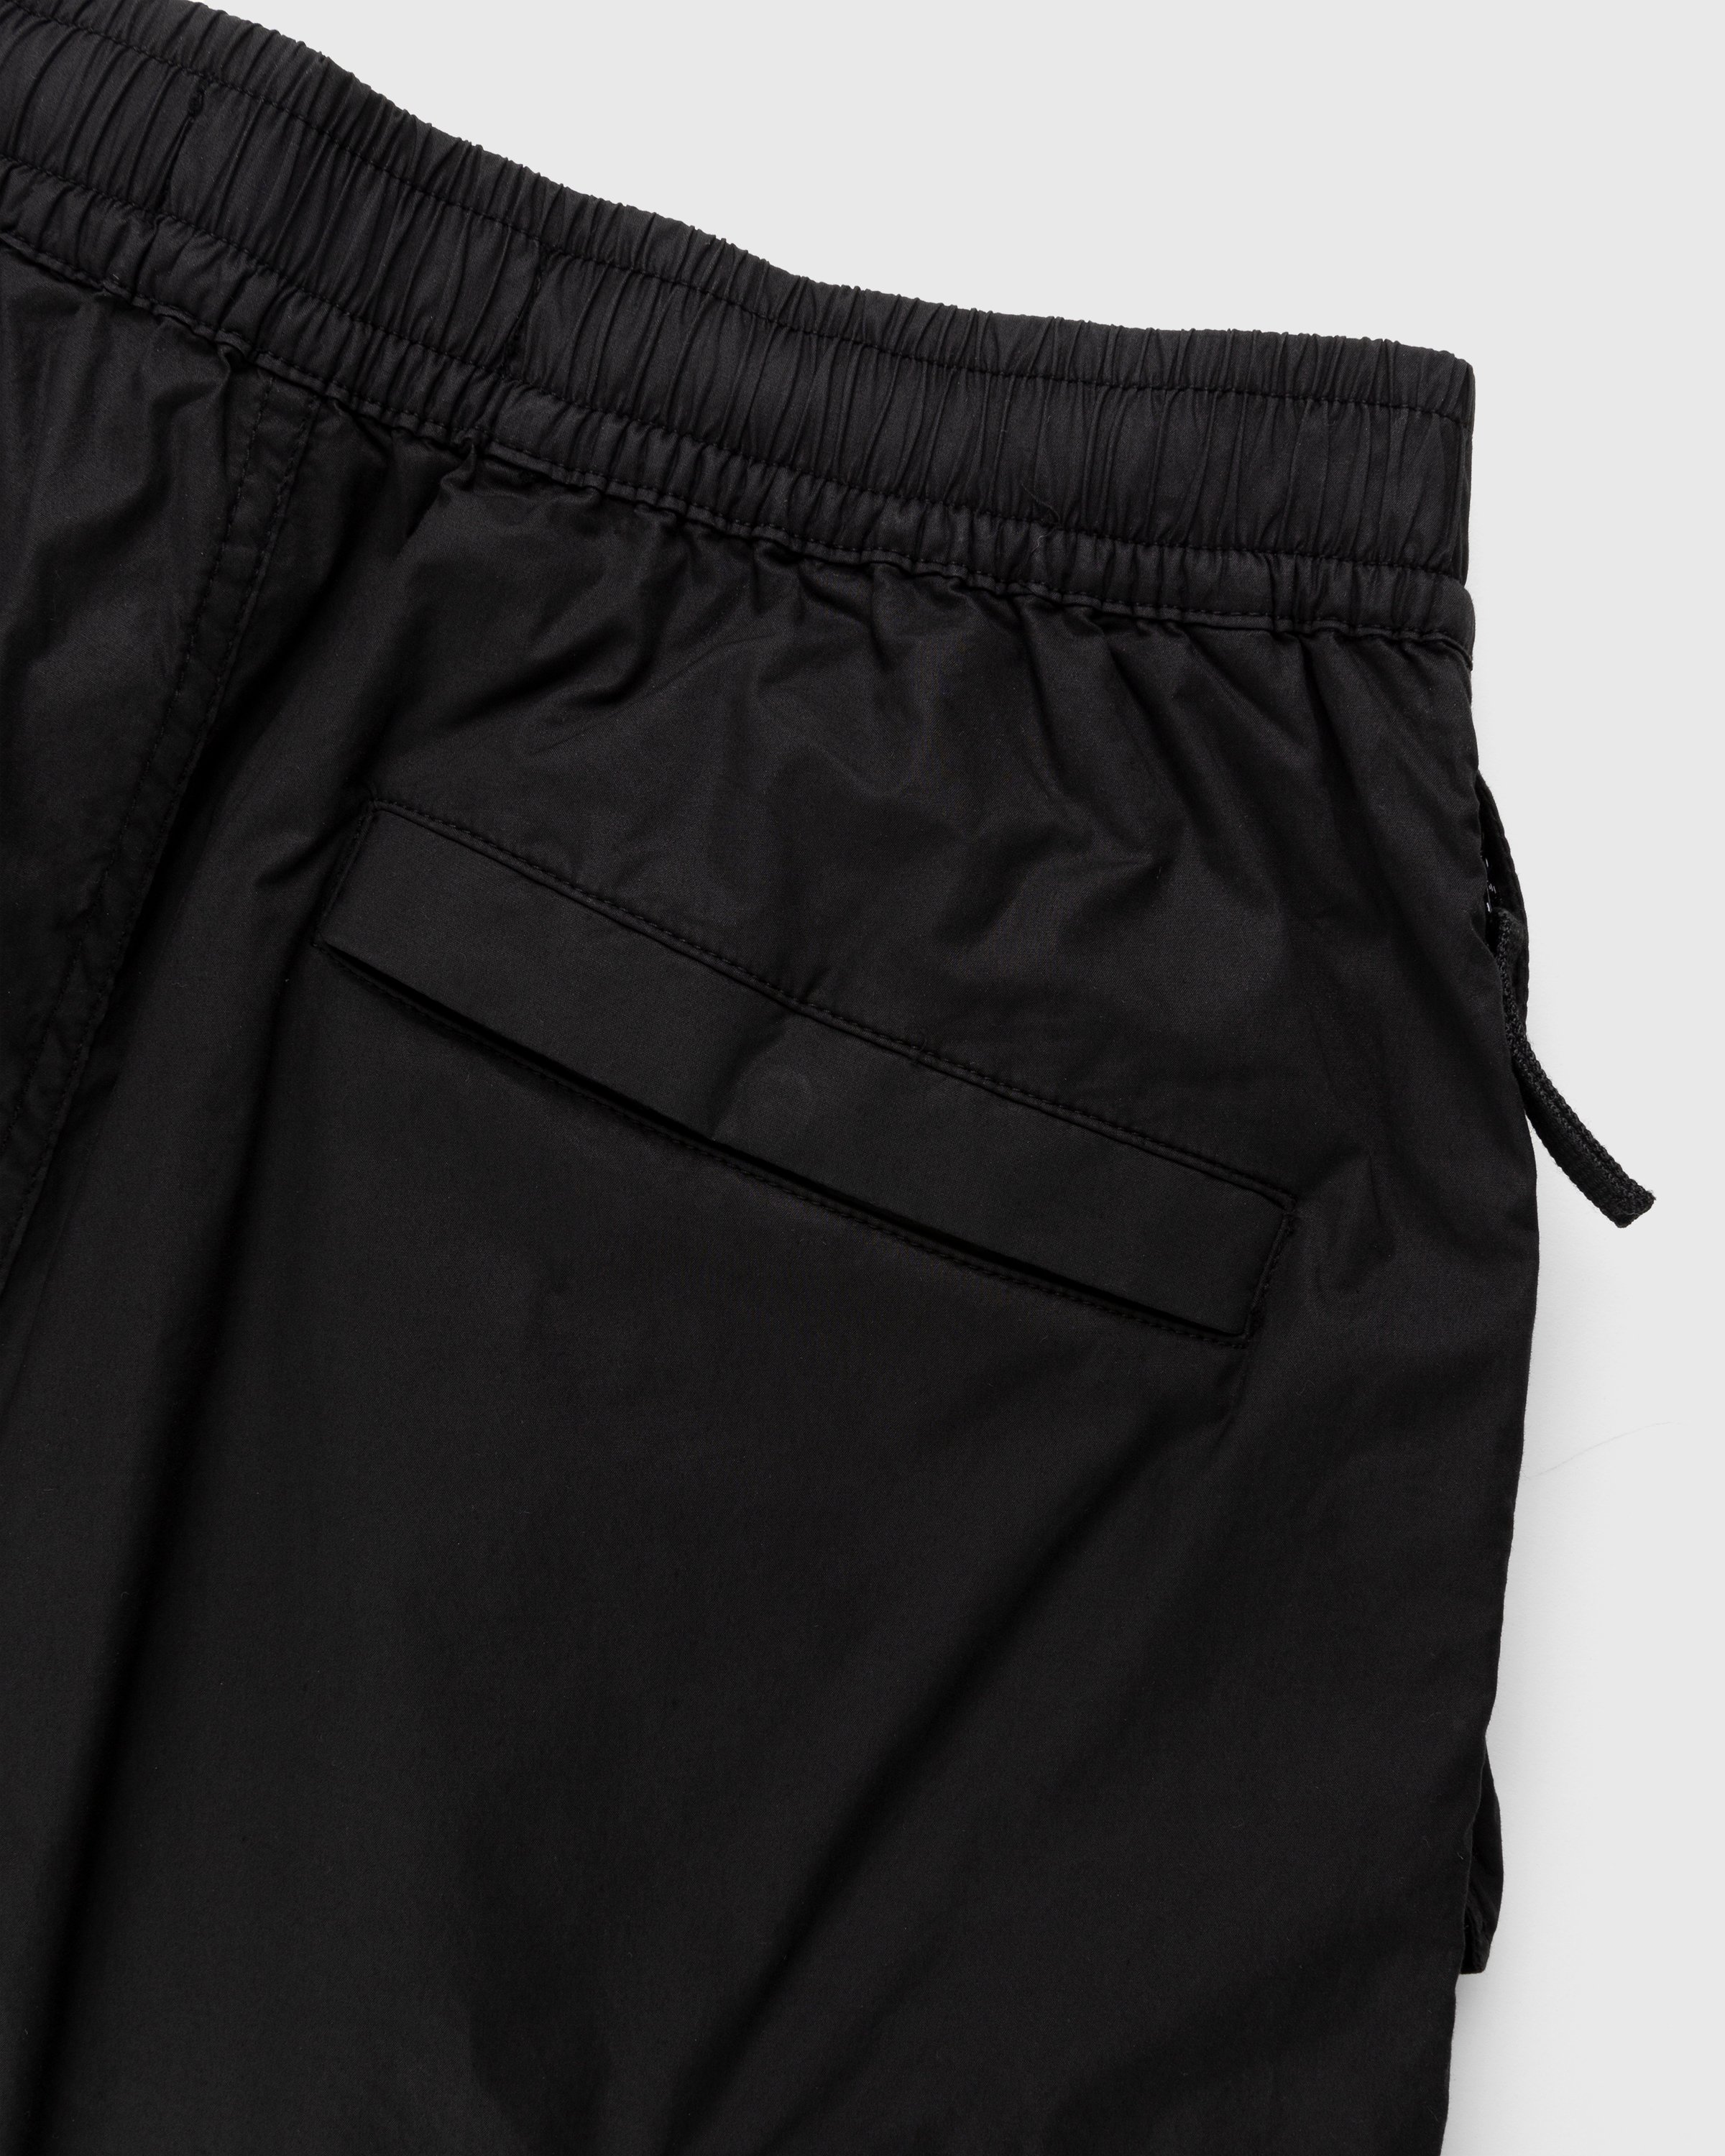 Stone Island - L0103 Garment-Dyed Shorts Black - Clothing - Black - Image 5